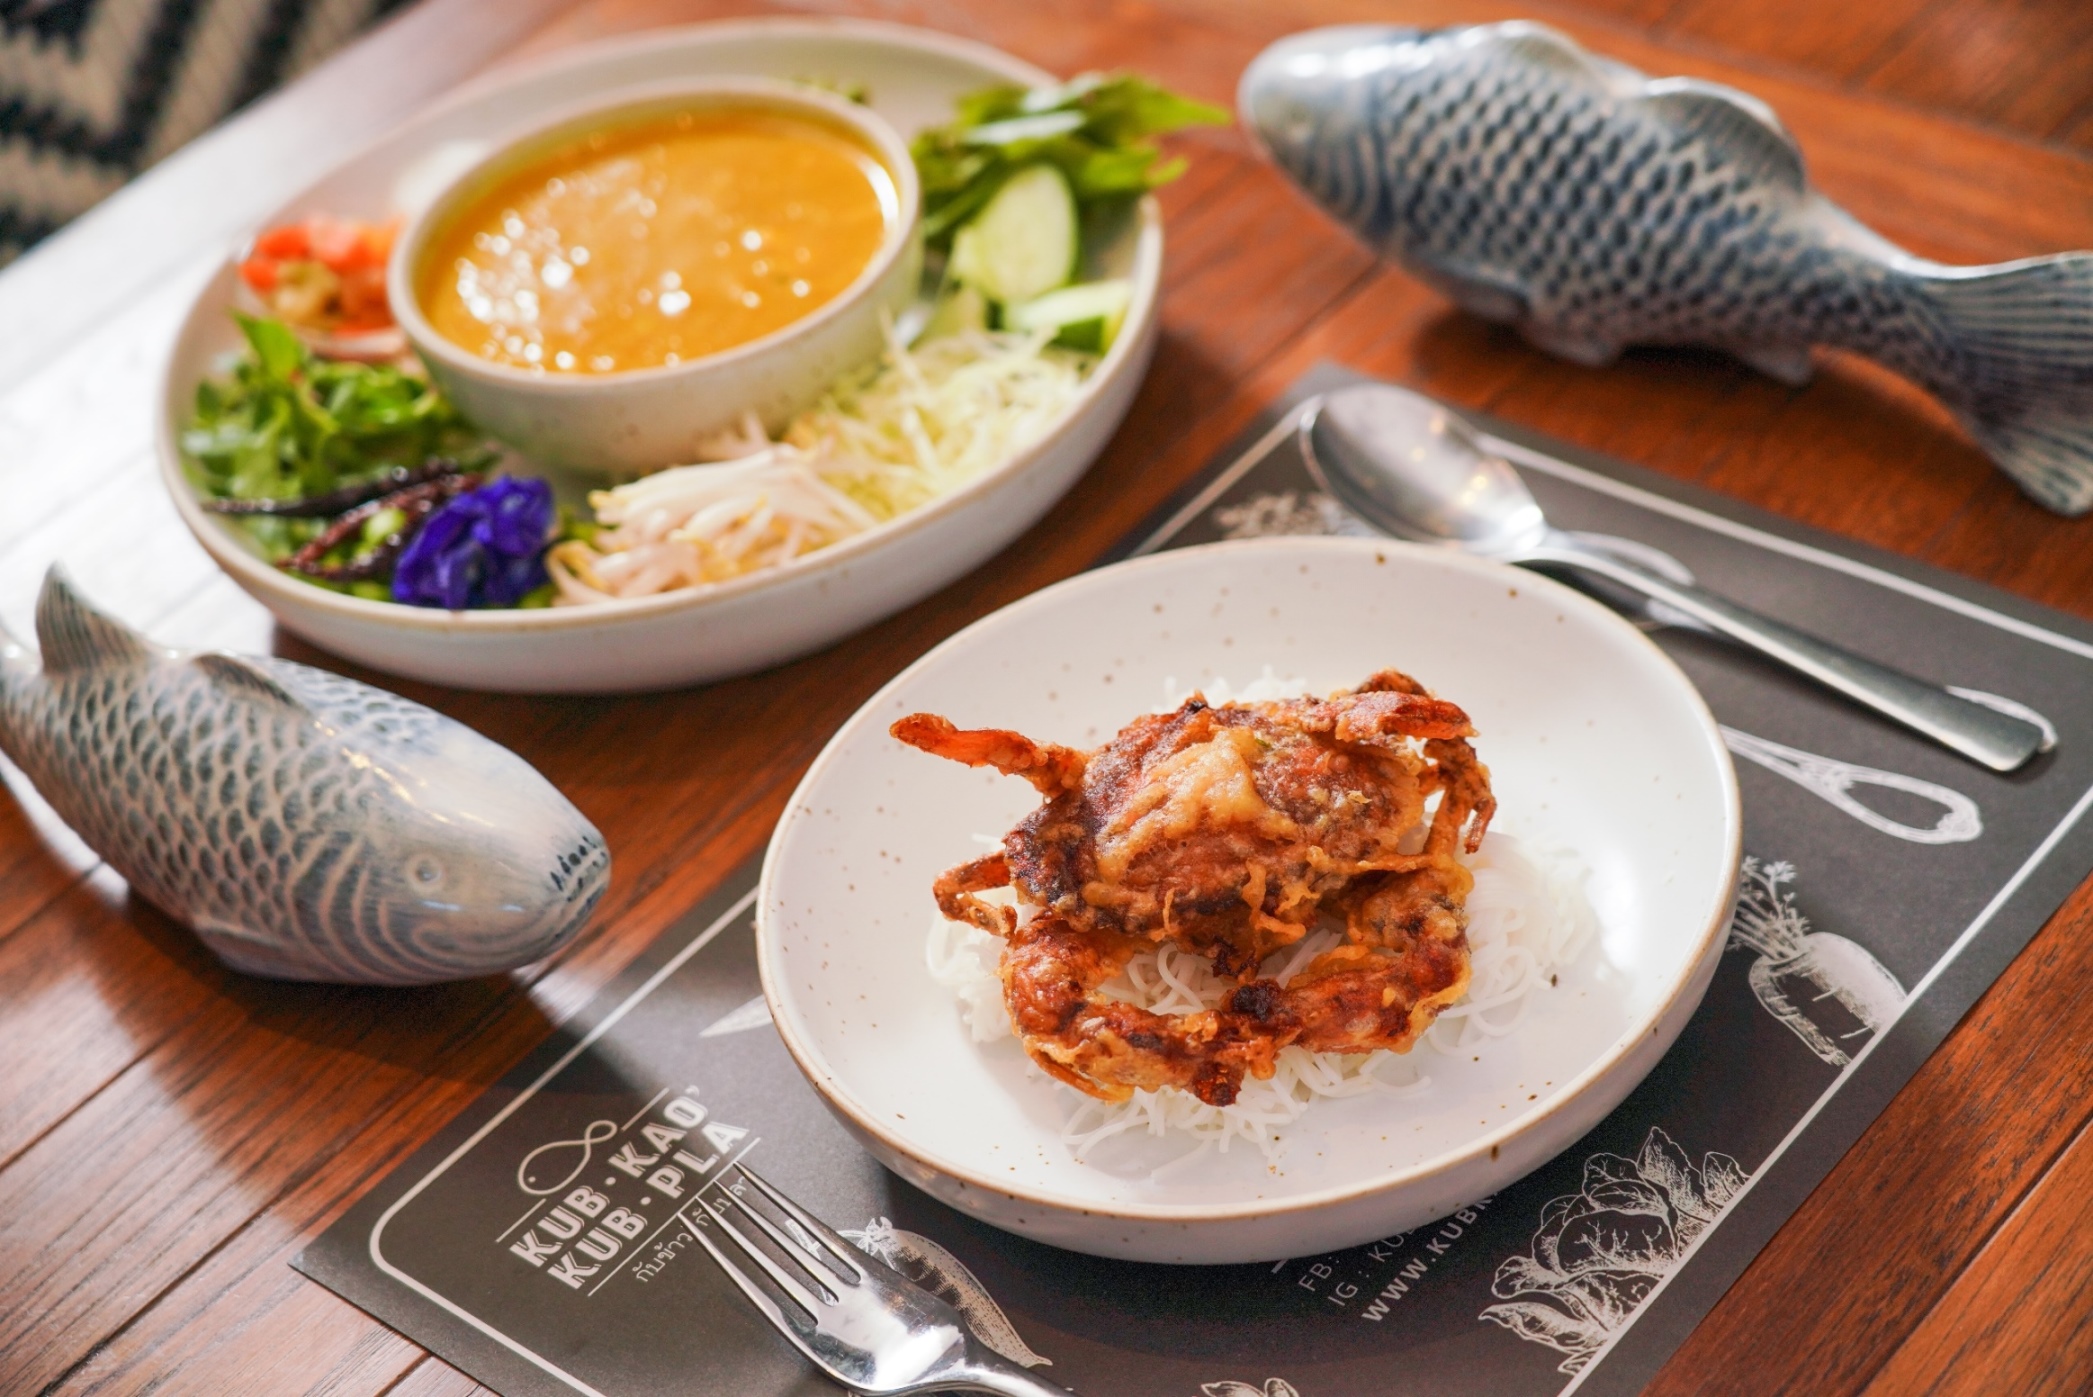 10 Best Noodle Menus  At Ratchaprasong, Pratunam, Erawan – Noodles Lovers Should Not Miss